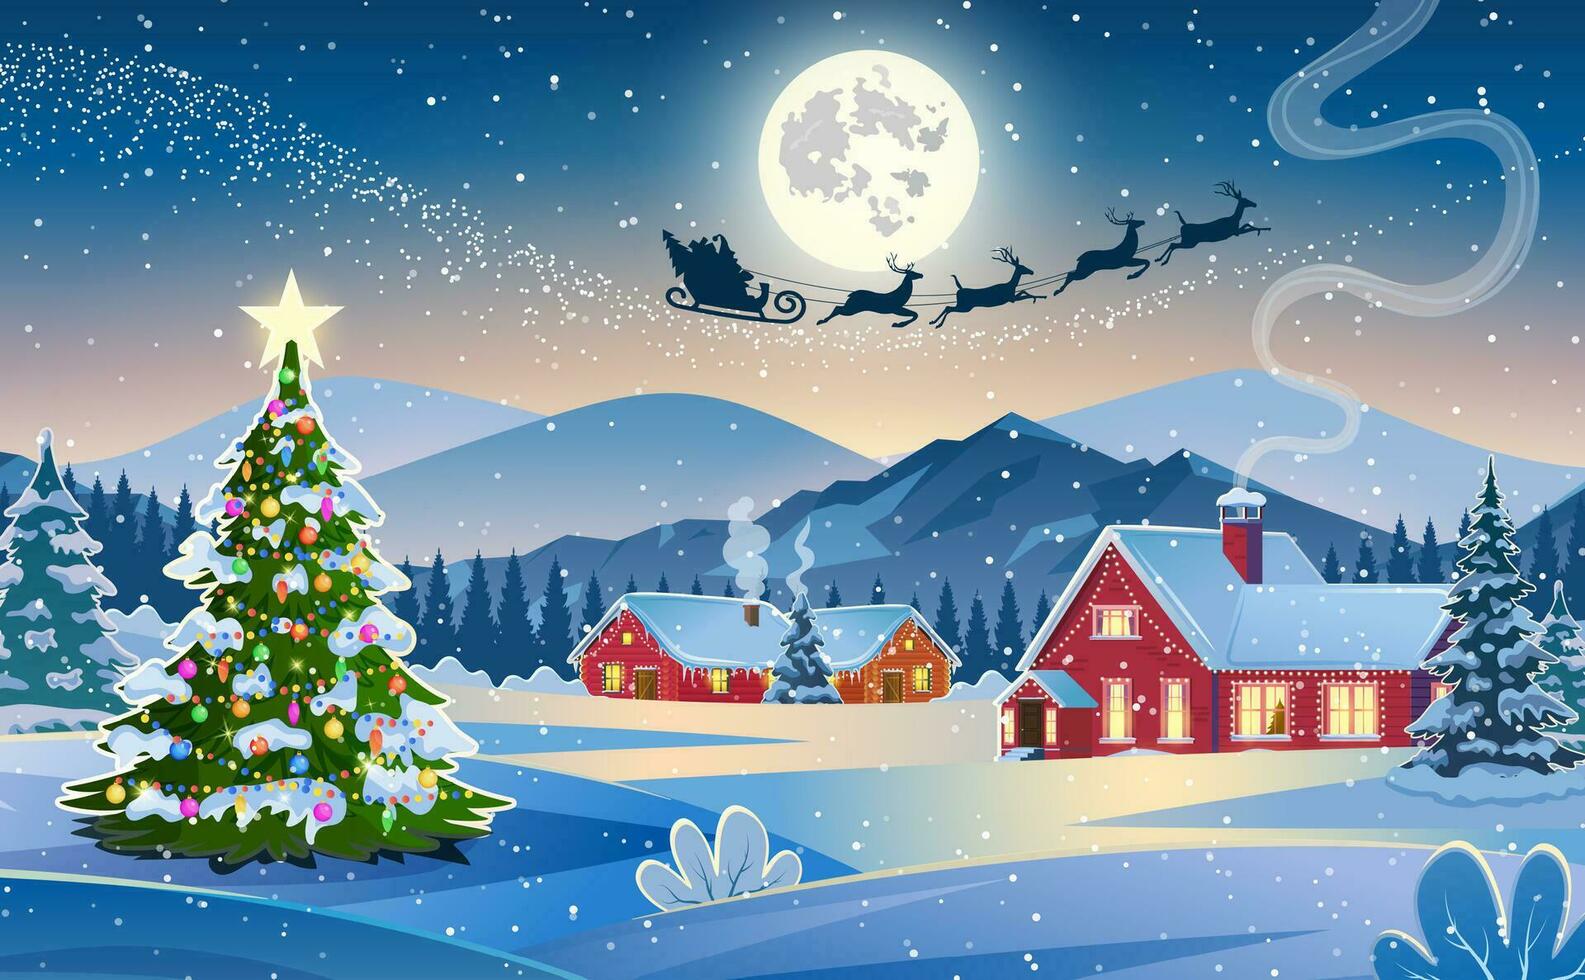 Winter Schnee Landschaft und Häuser mit Weihnachten Baum. Konzept zum Gruß oder Post- Karte. Hintergrund mit Mond und das Silhouette von Santa claus fliegend auf ein Schlitten. Vektor Illustration.